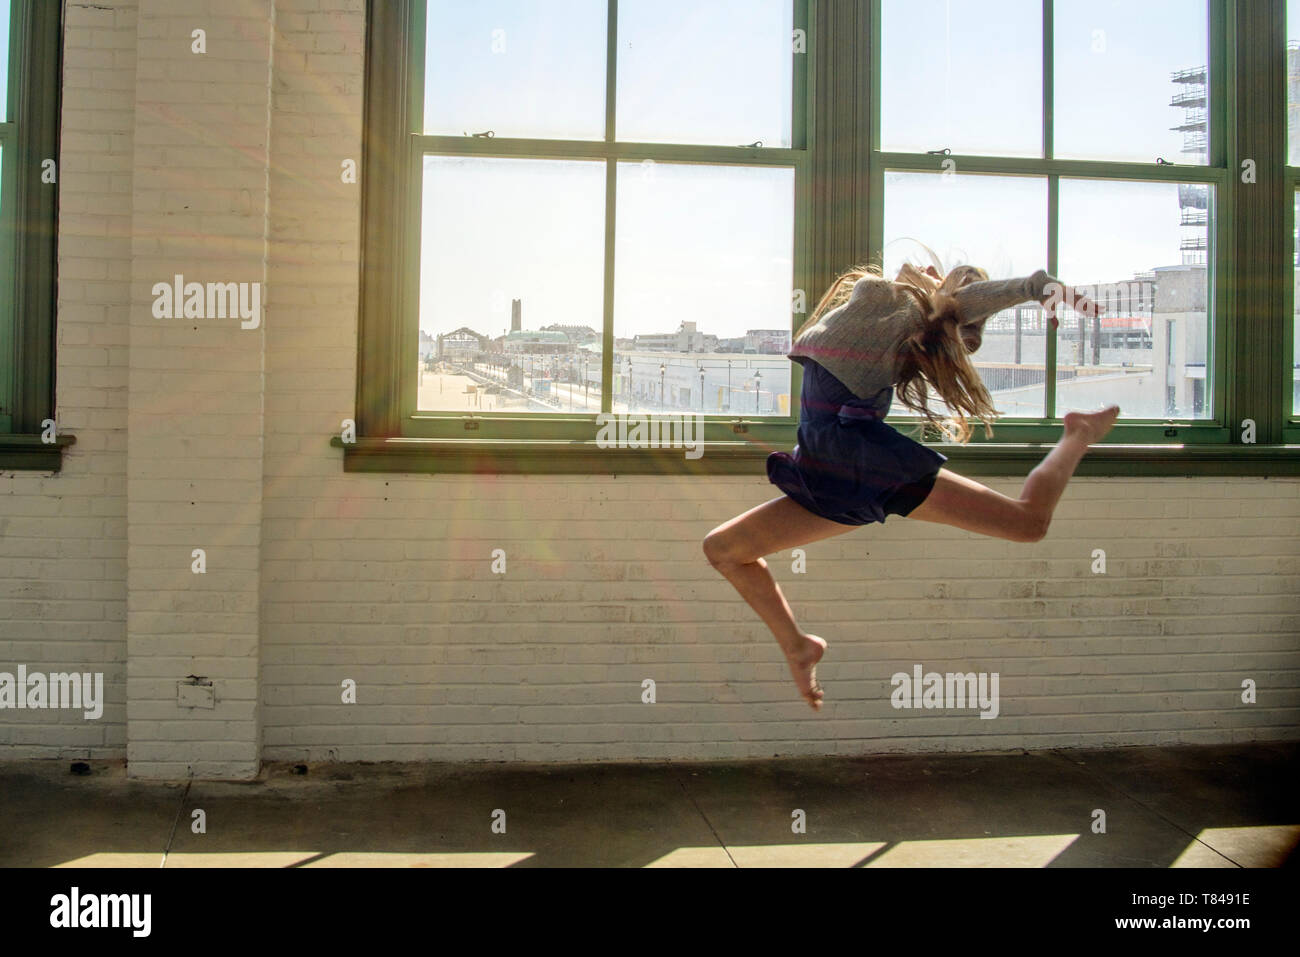 Adolescente con cabello marrón largo saltando en medio del aire dance studio Foto de stock